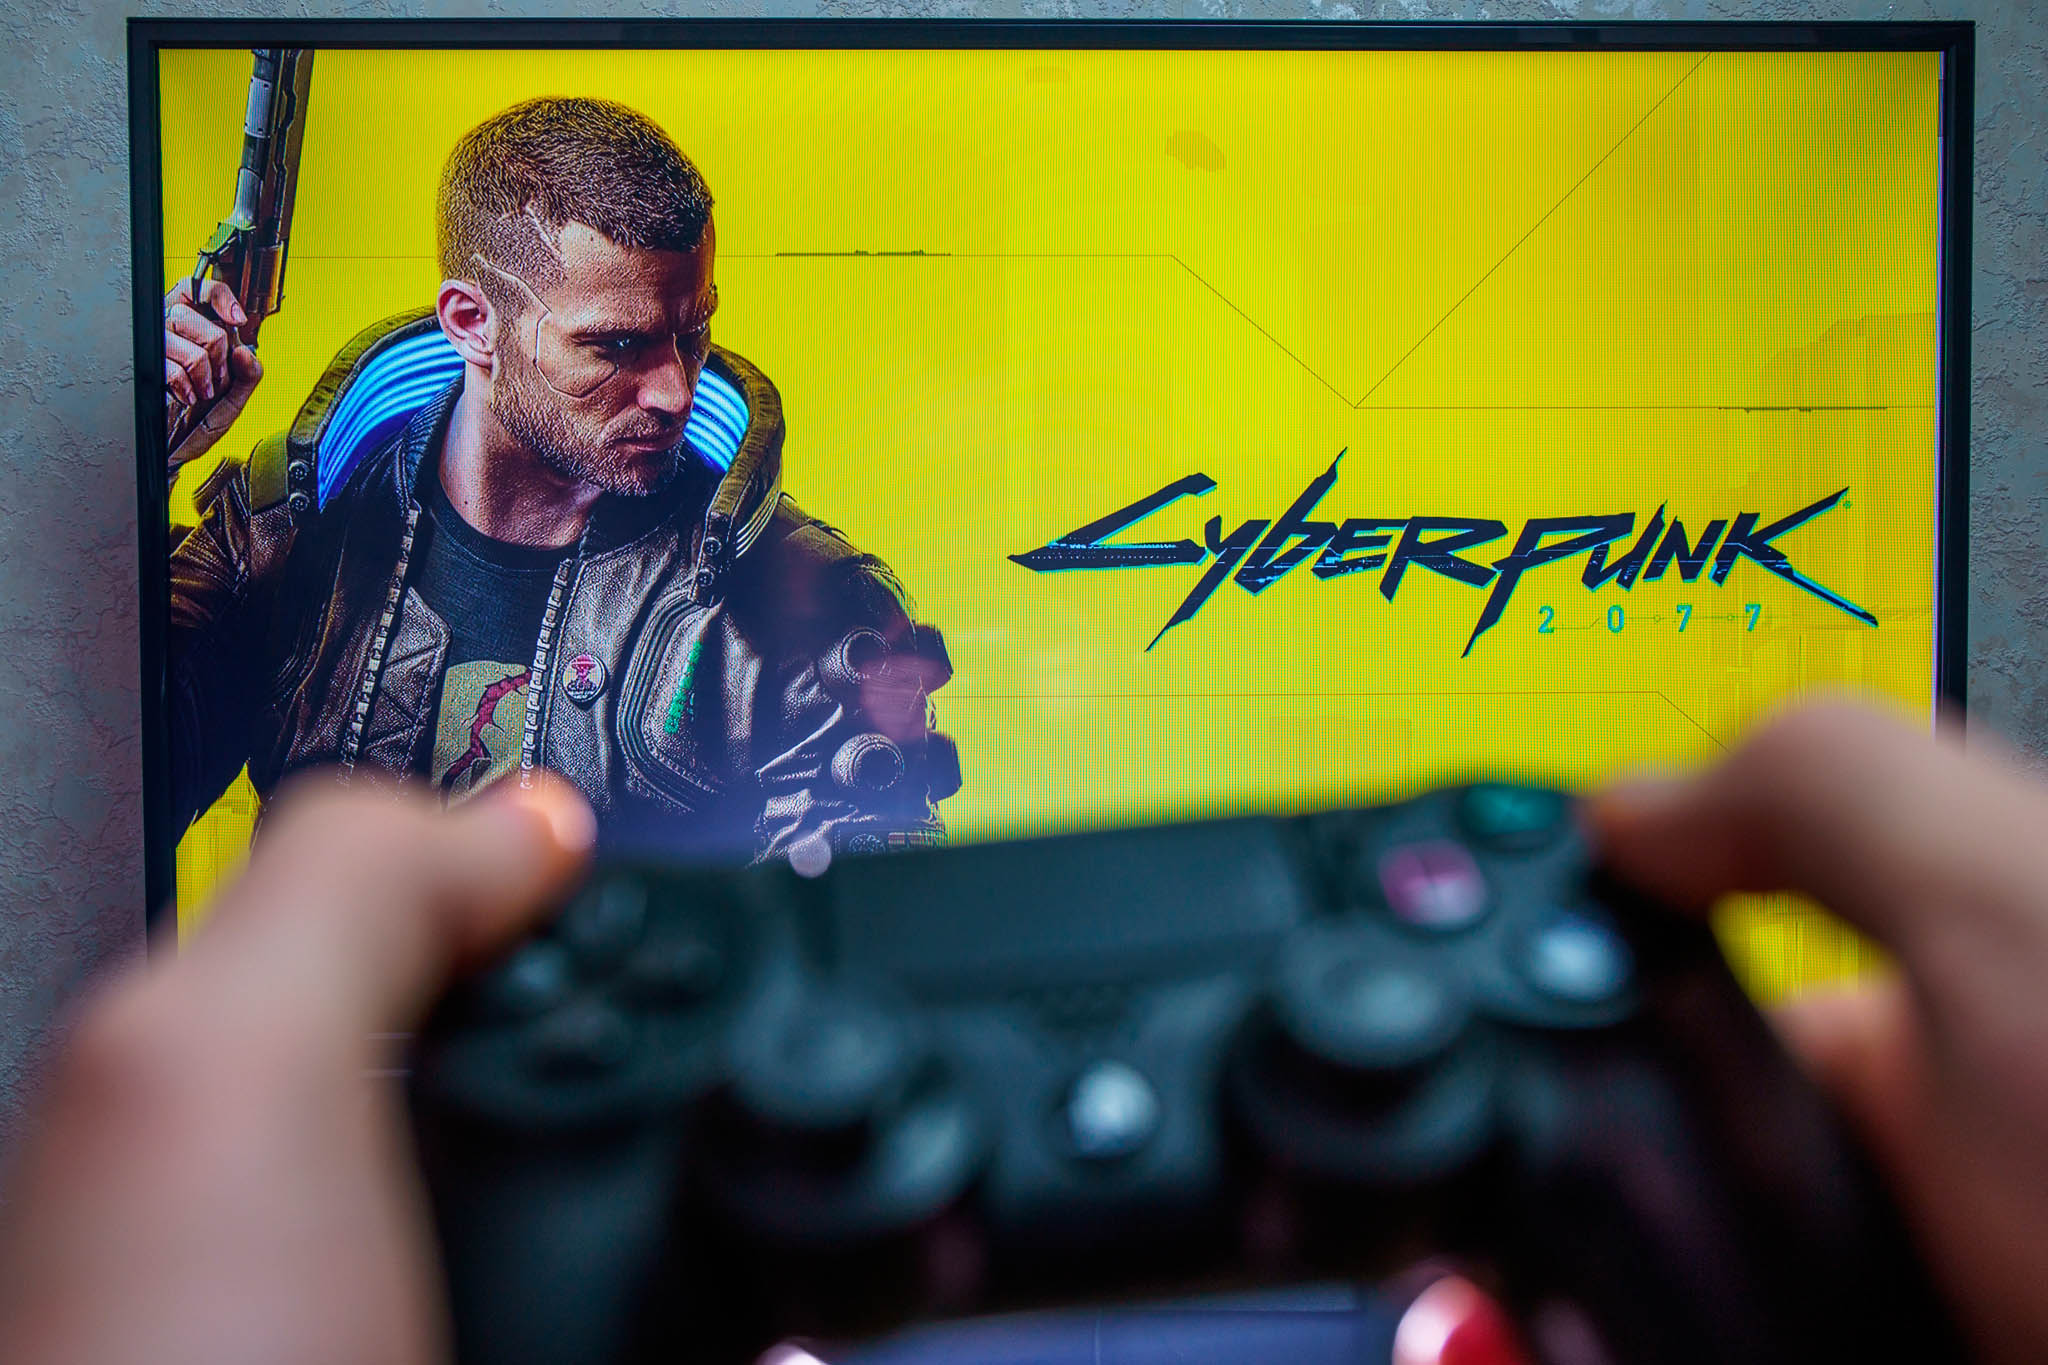 Nepoveden hra.Dlouho vyhlenou videohru Cyberpunk 2077 trp nedostatky. Firma Sony ji proto sthla znabdky vesvm internetovm obchod pro konzole PlayStation.